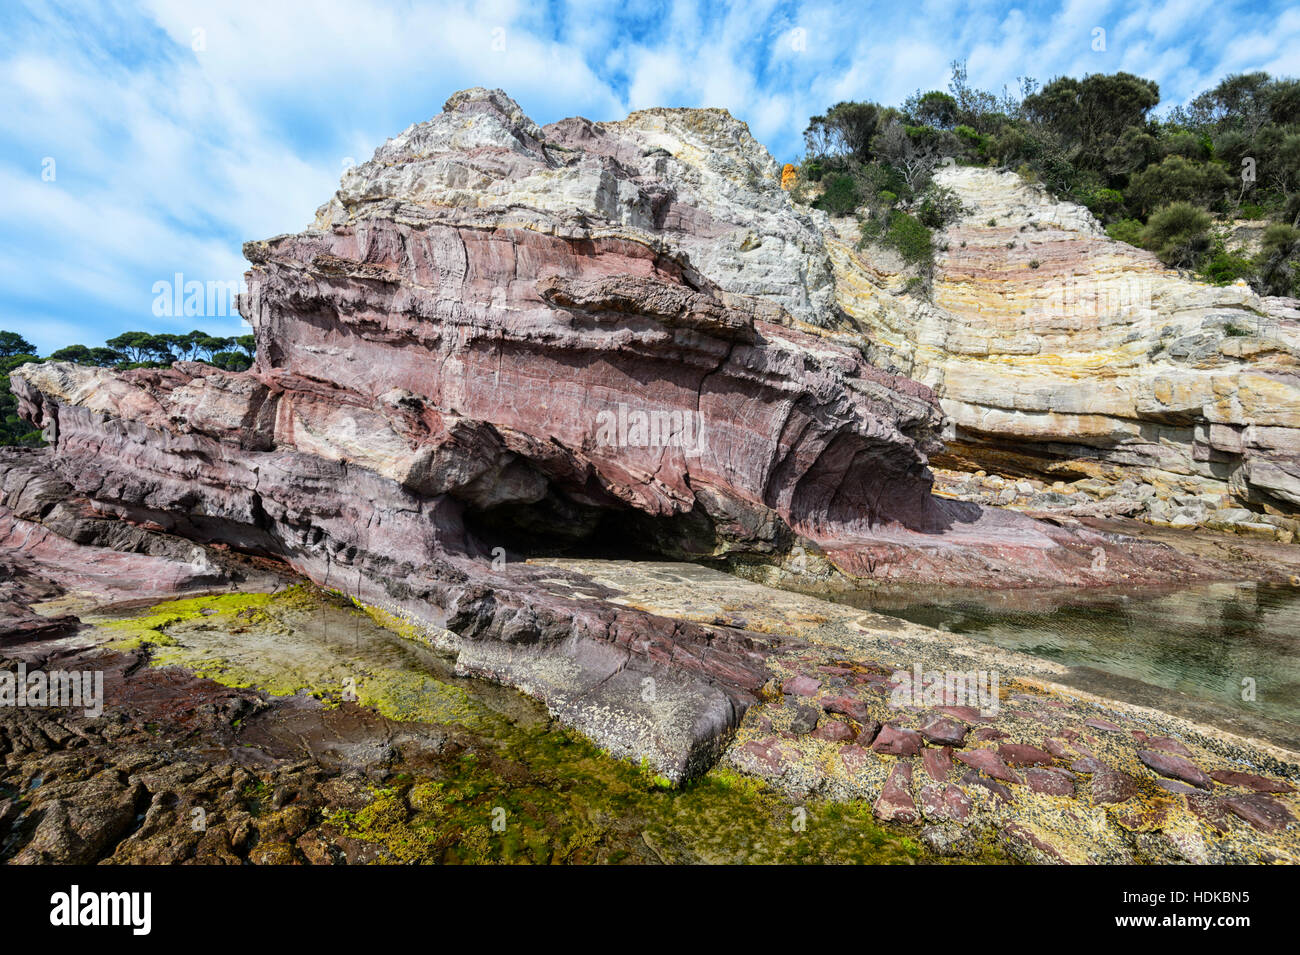 Exemple de formations de roches sédimentaires paléozoïques, partie de l'Avelgem complexe d'accrétion, Eden Rock pool, Côte Sud, New South Wales, Australie Banque D'Images